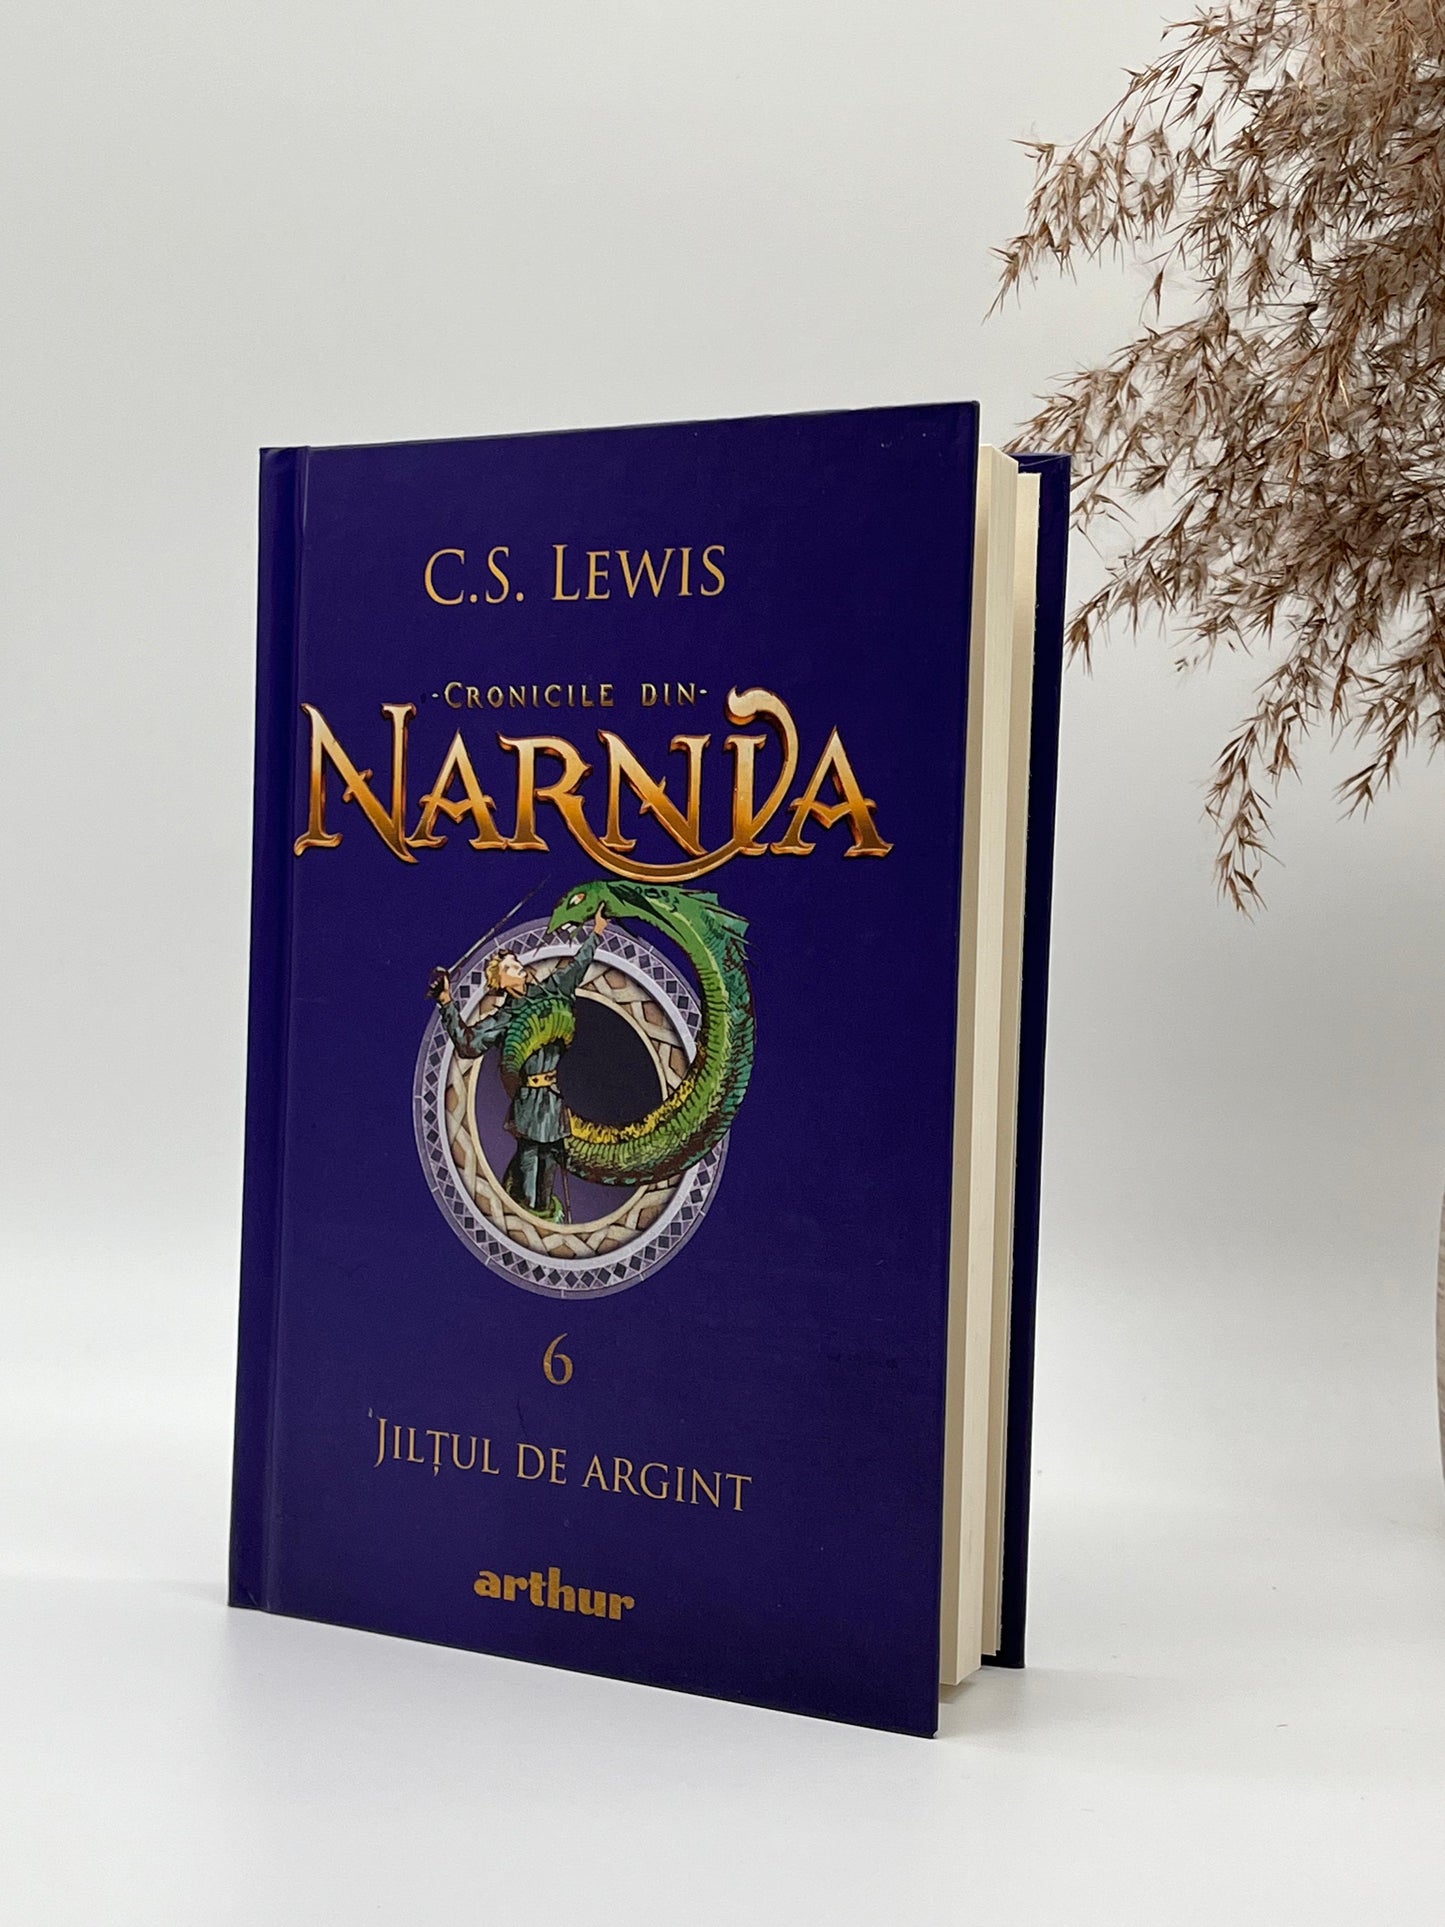 Jilțul de argint [Cronicile din Narnia - Vol 6]
C. S. Lewis